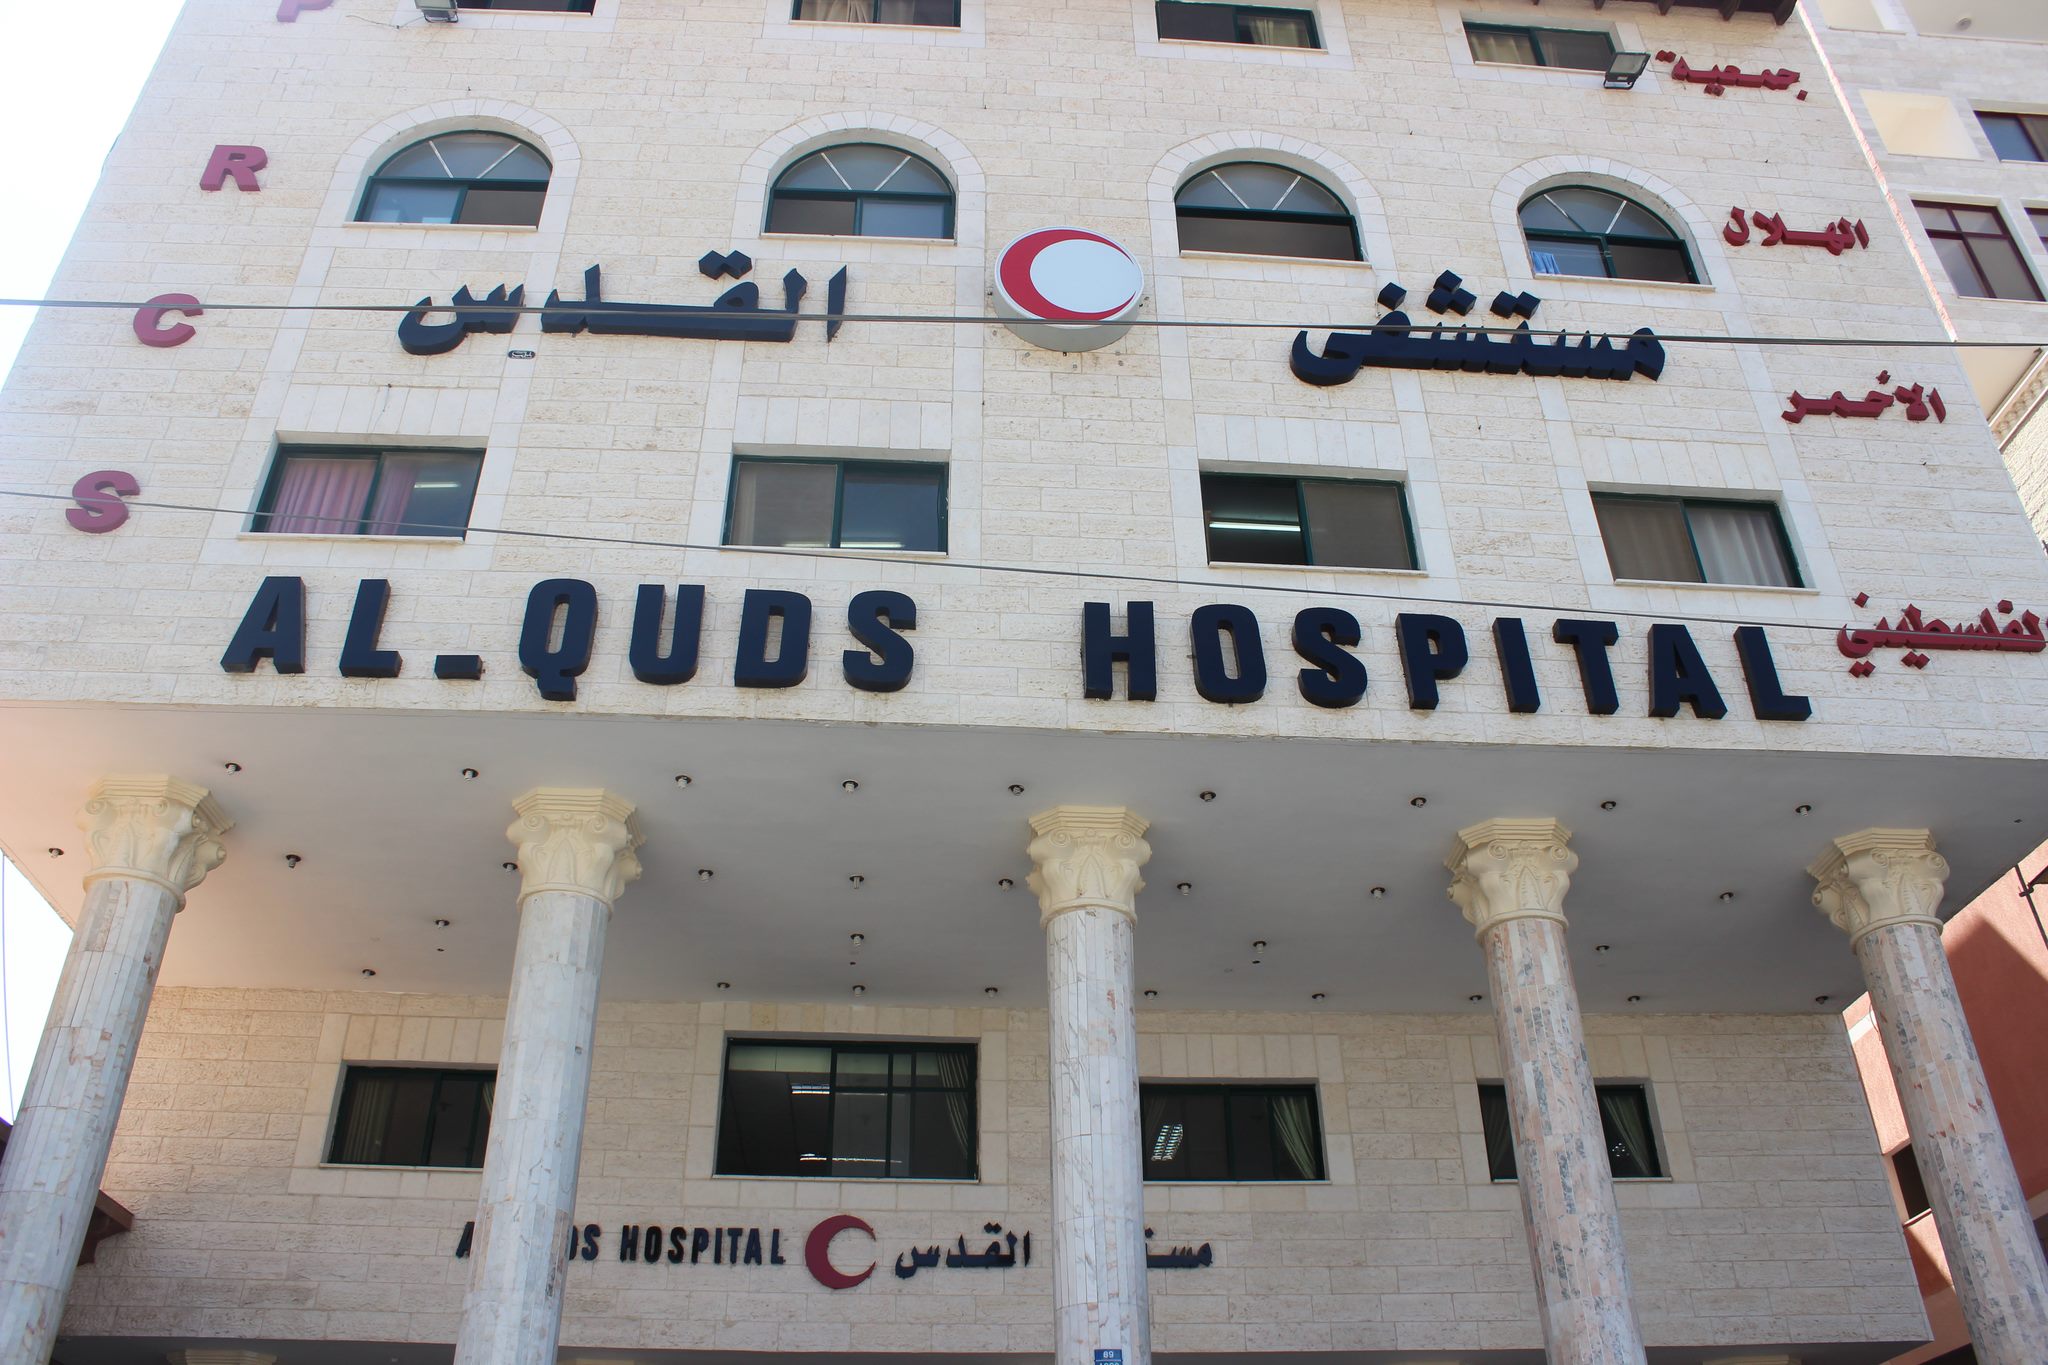 Γάζα: To Ισραήλ ζητάει εκκένωση νοσοκομείου - «Αδύνατον να εκκενωθεί» λέει η Ερυθρά Ημισέληνος